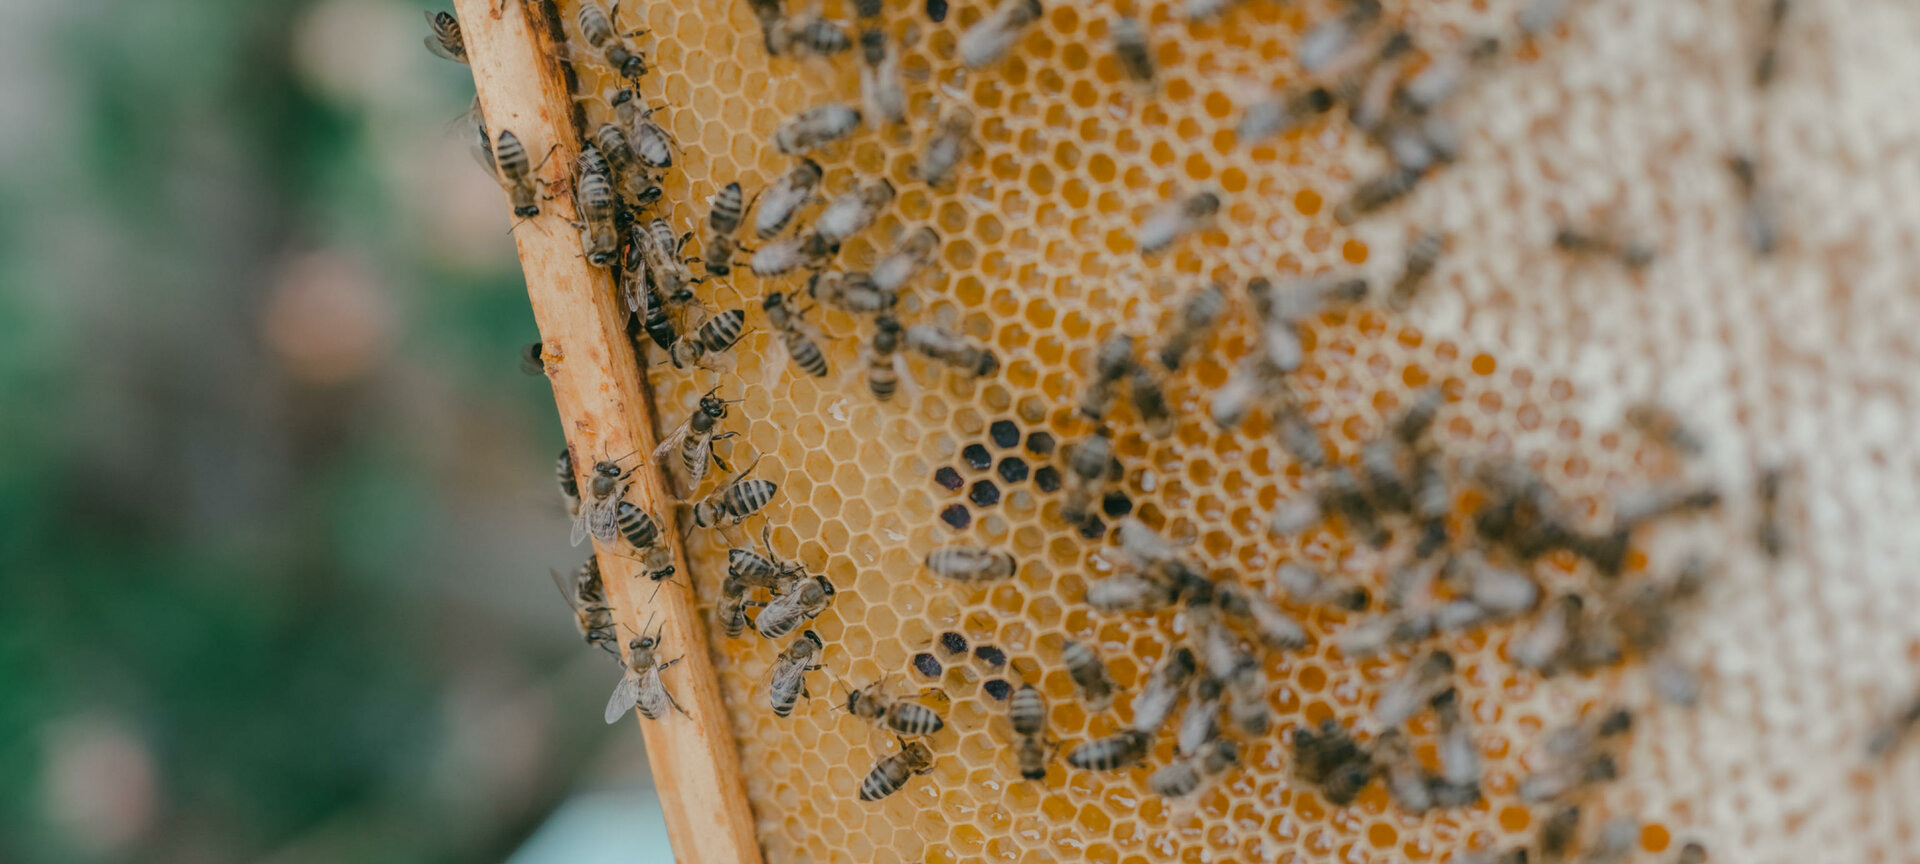 Bezoek aan de bijenhal op domein Kiewit - De bijenhal